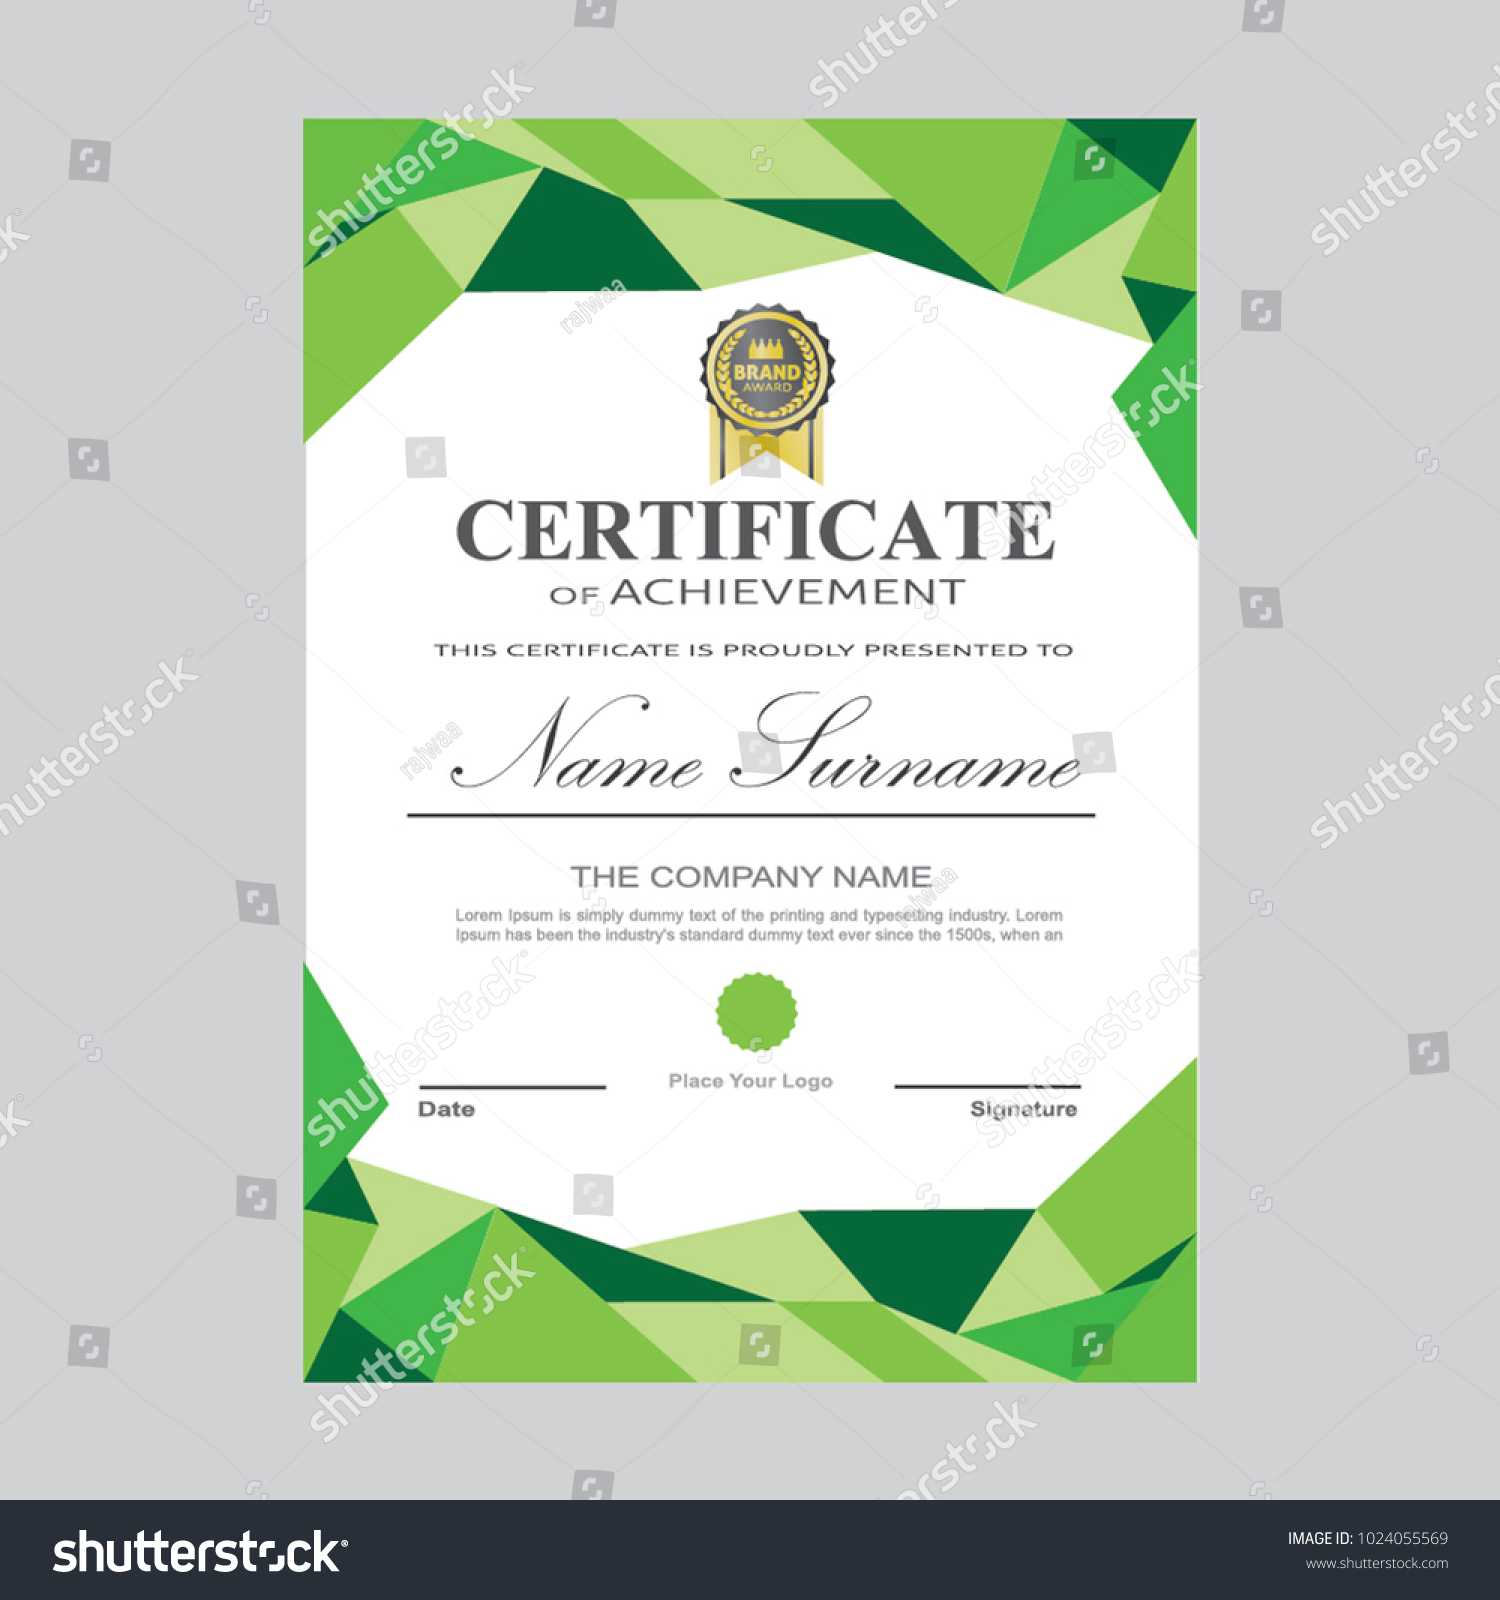 Certificate Template Modern A4 Horizontal Landscape Stock Throughout Landscape Certificate Templates